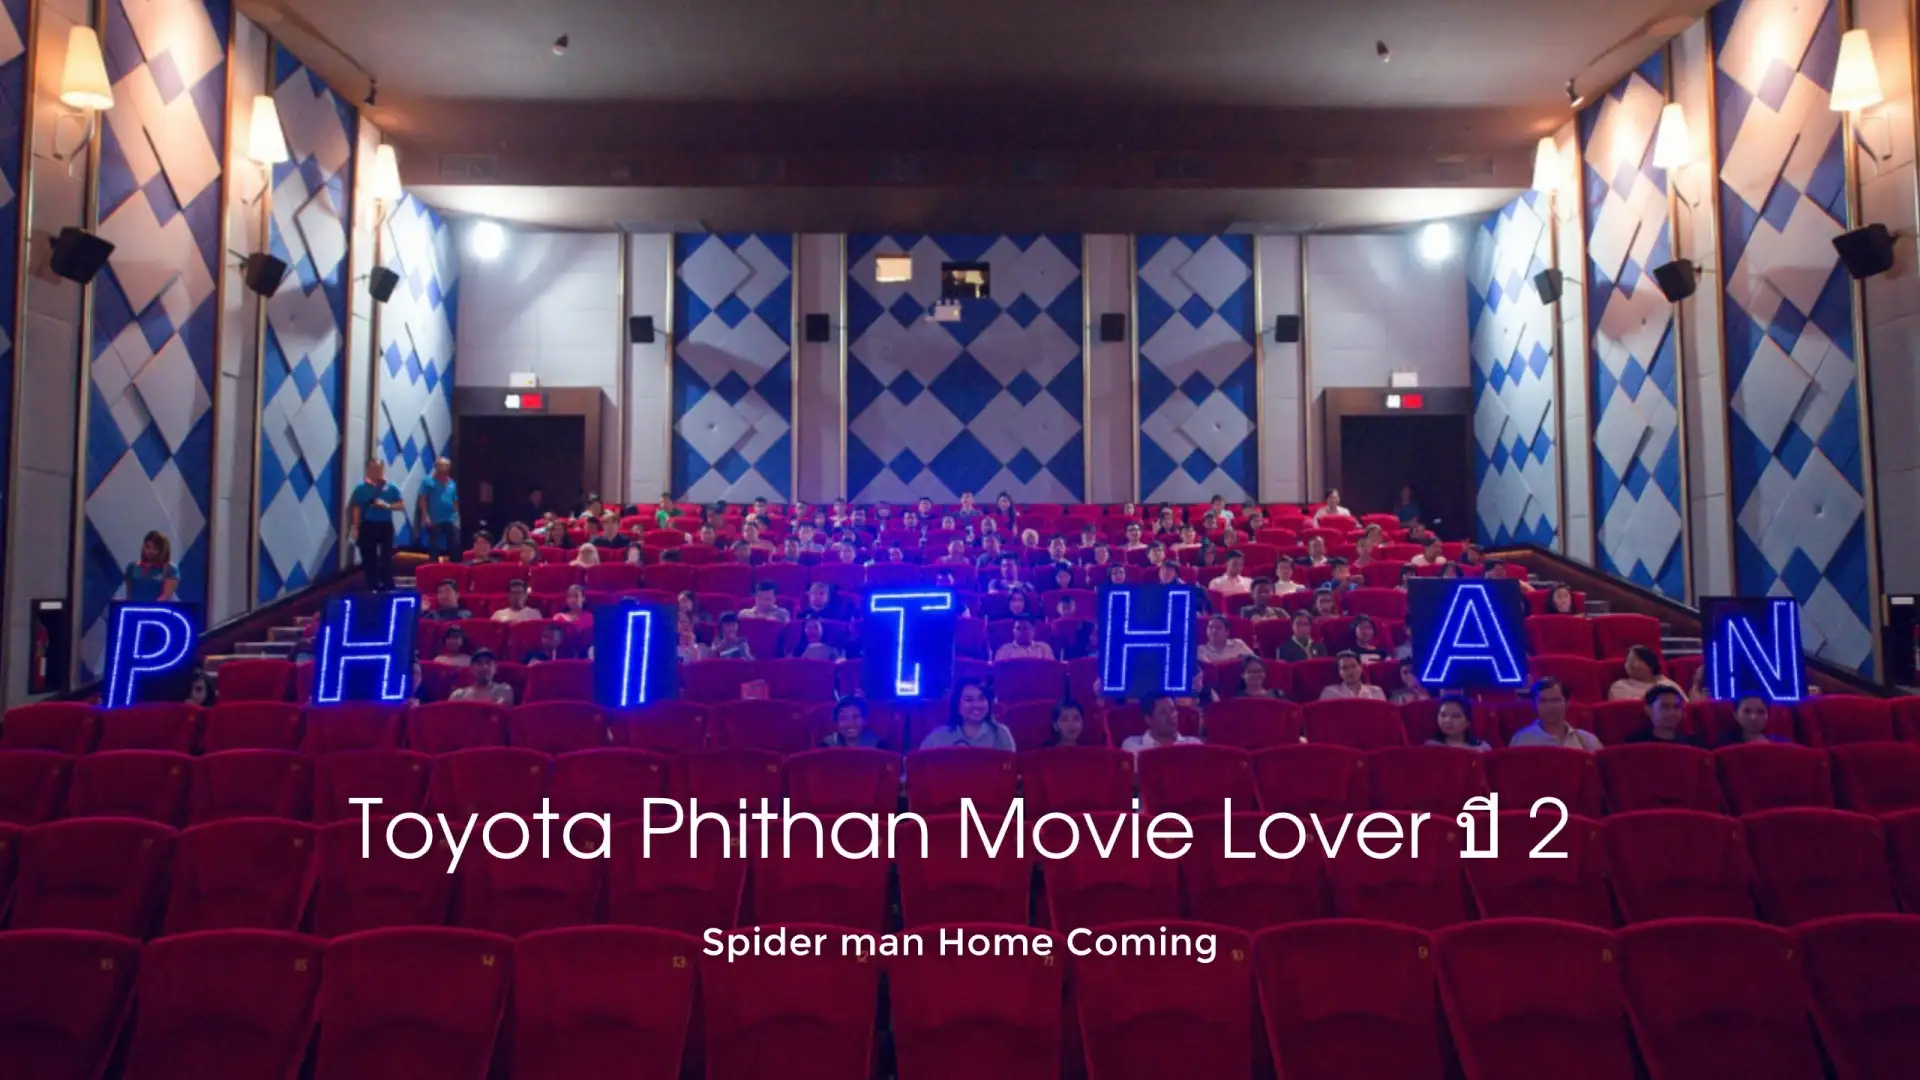 โตโยต้าพิธาน จัด Phithan movie lover ปี 2 พาดูชม Spider man Home Coming